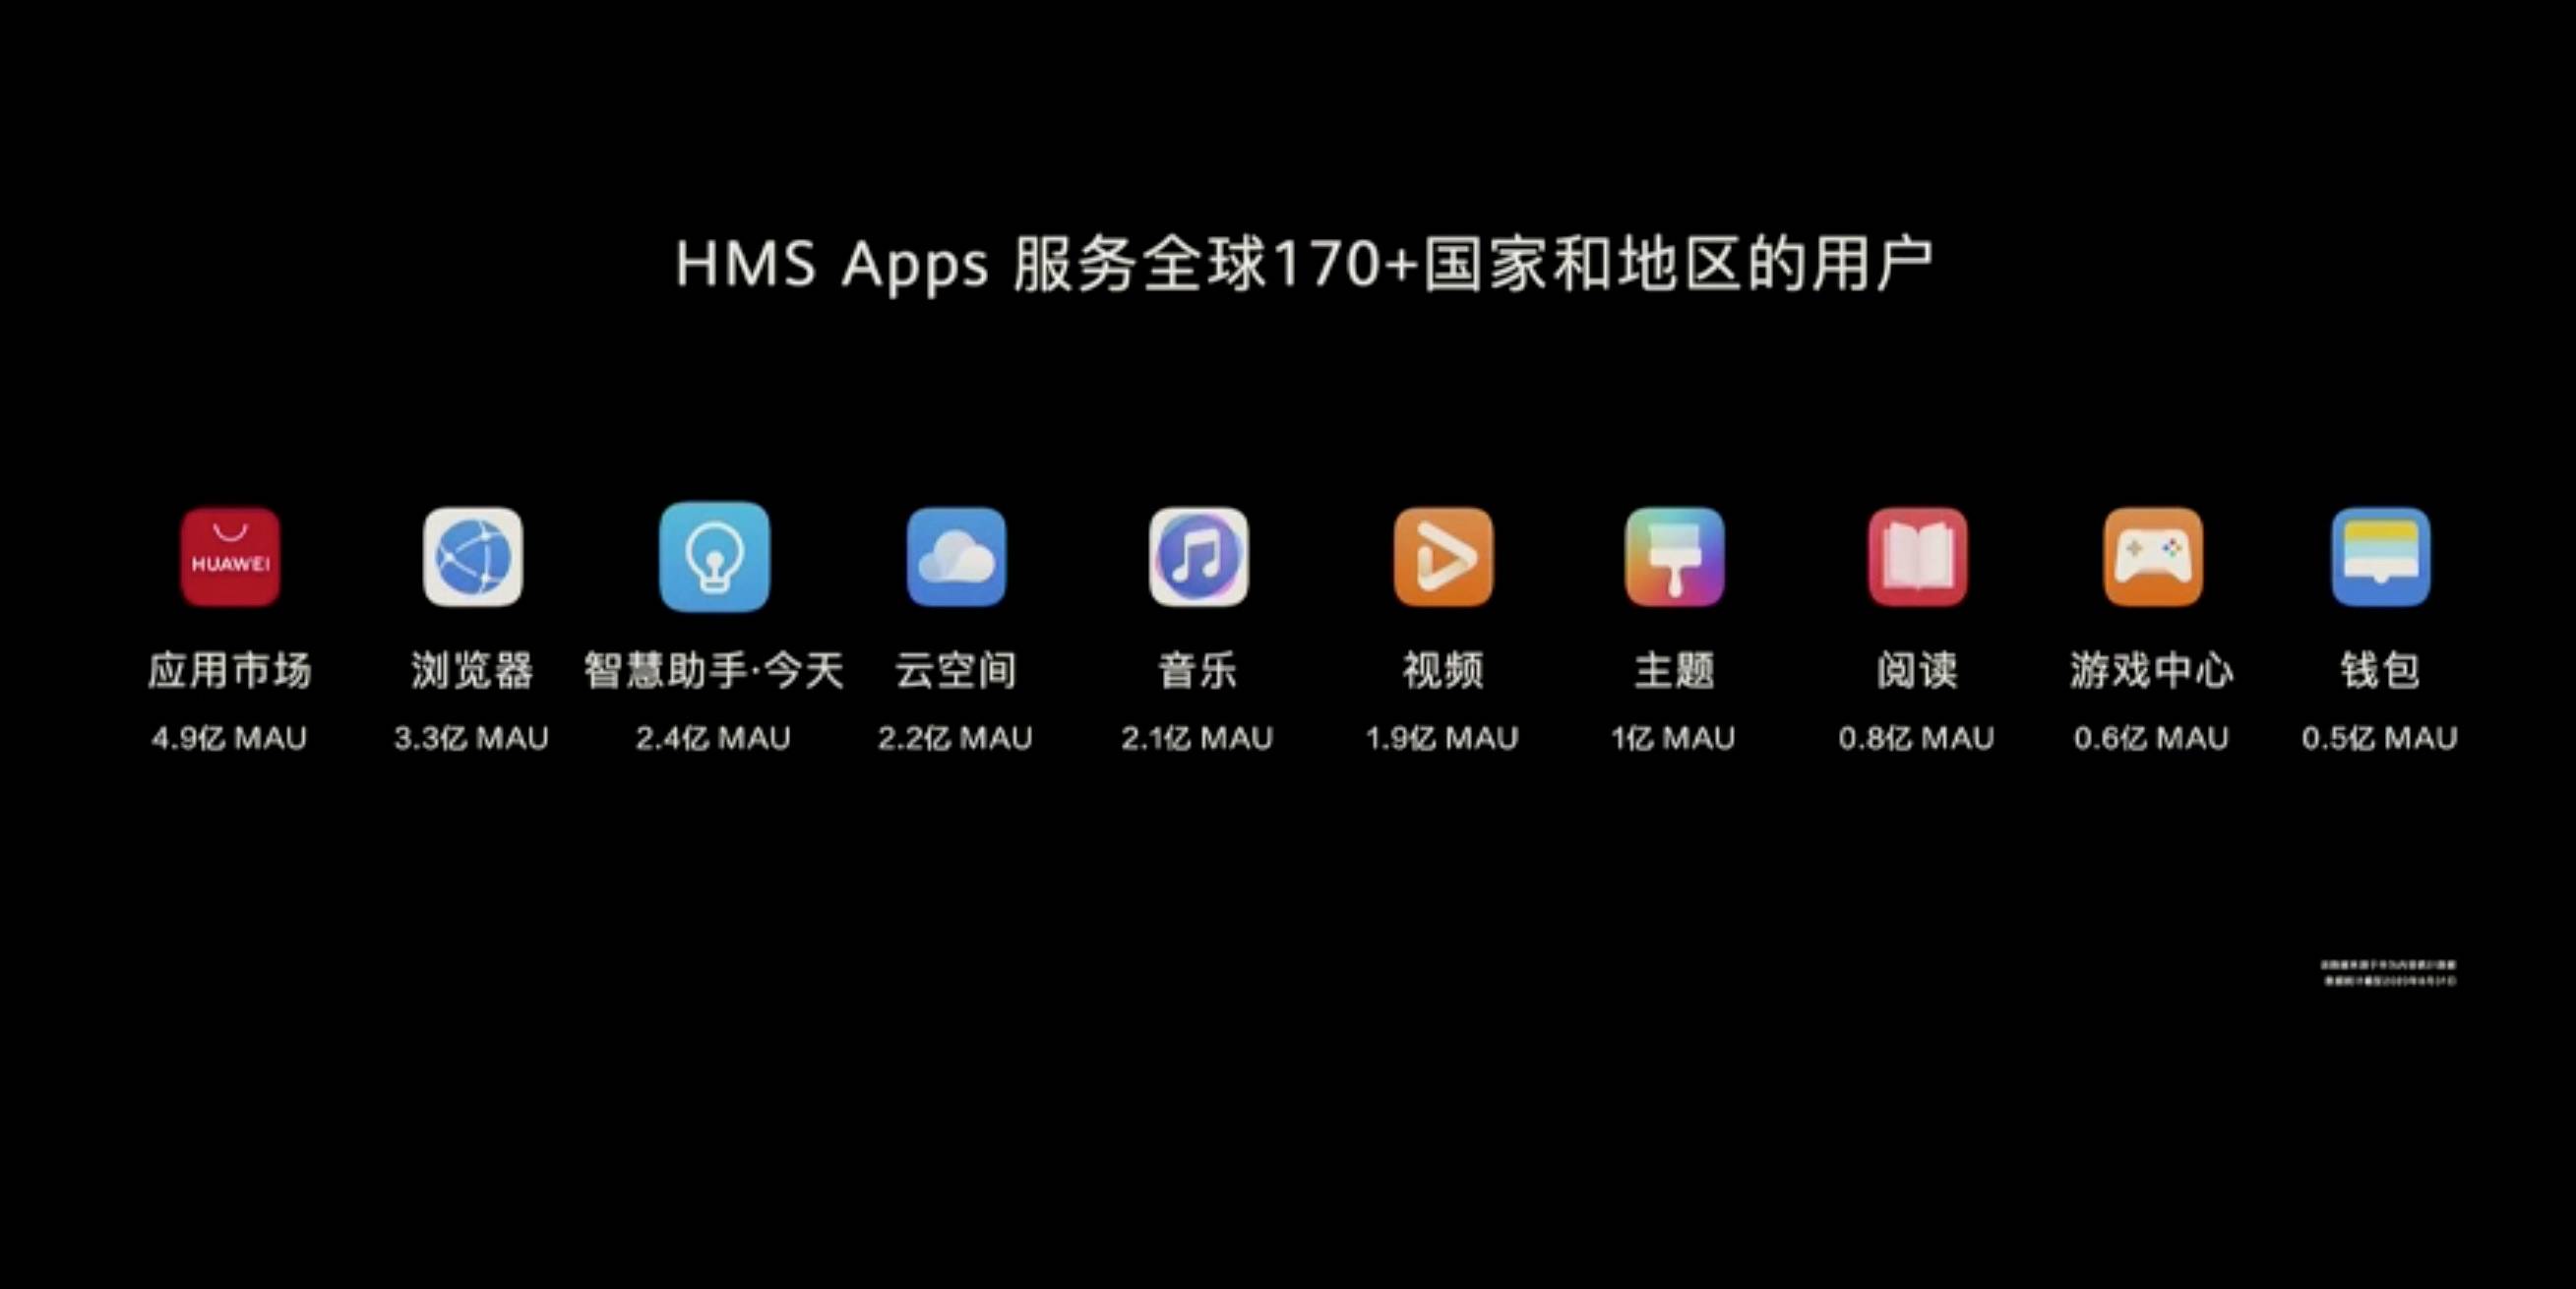 HDC 2020 HMS 2 - Huawei Hongmeng 2.0 è qui! Se non esegui un secondo Android, sarai sul tuo telefono entro la fine dell’anno